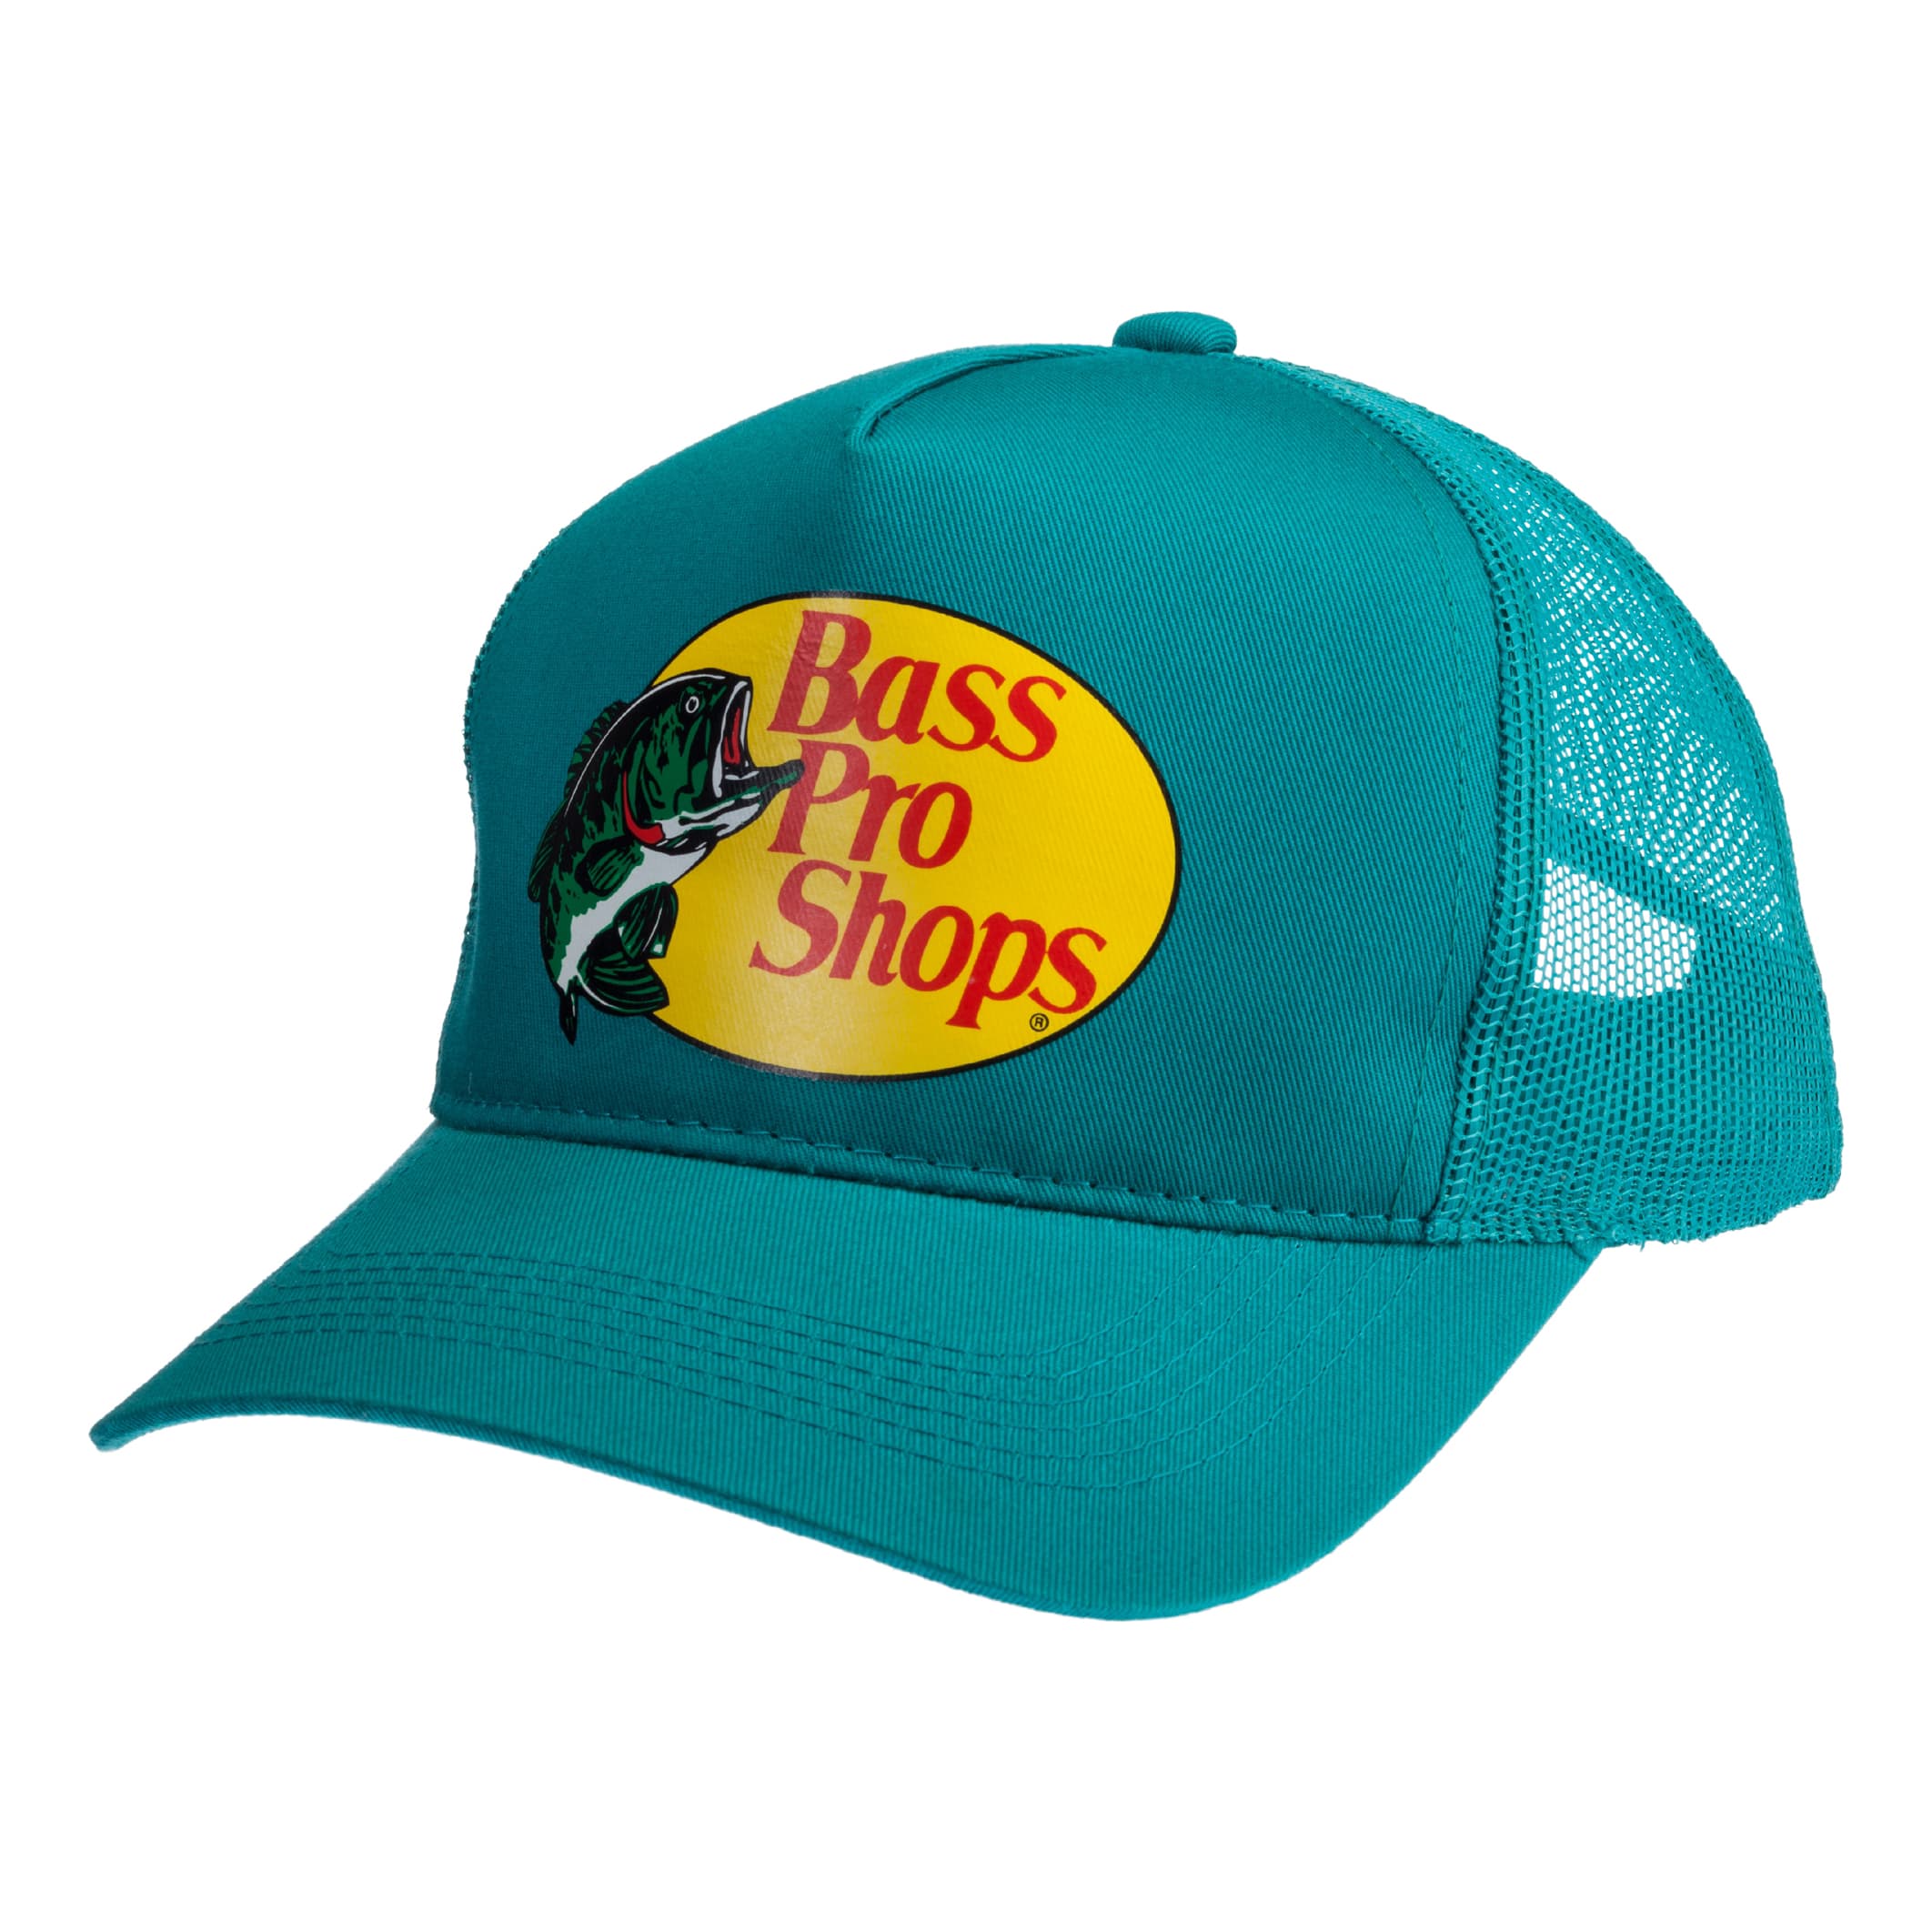 Bass Pro Shops® Trucker Cap - Aqua